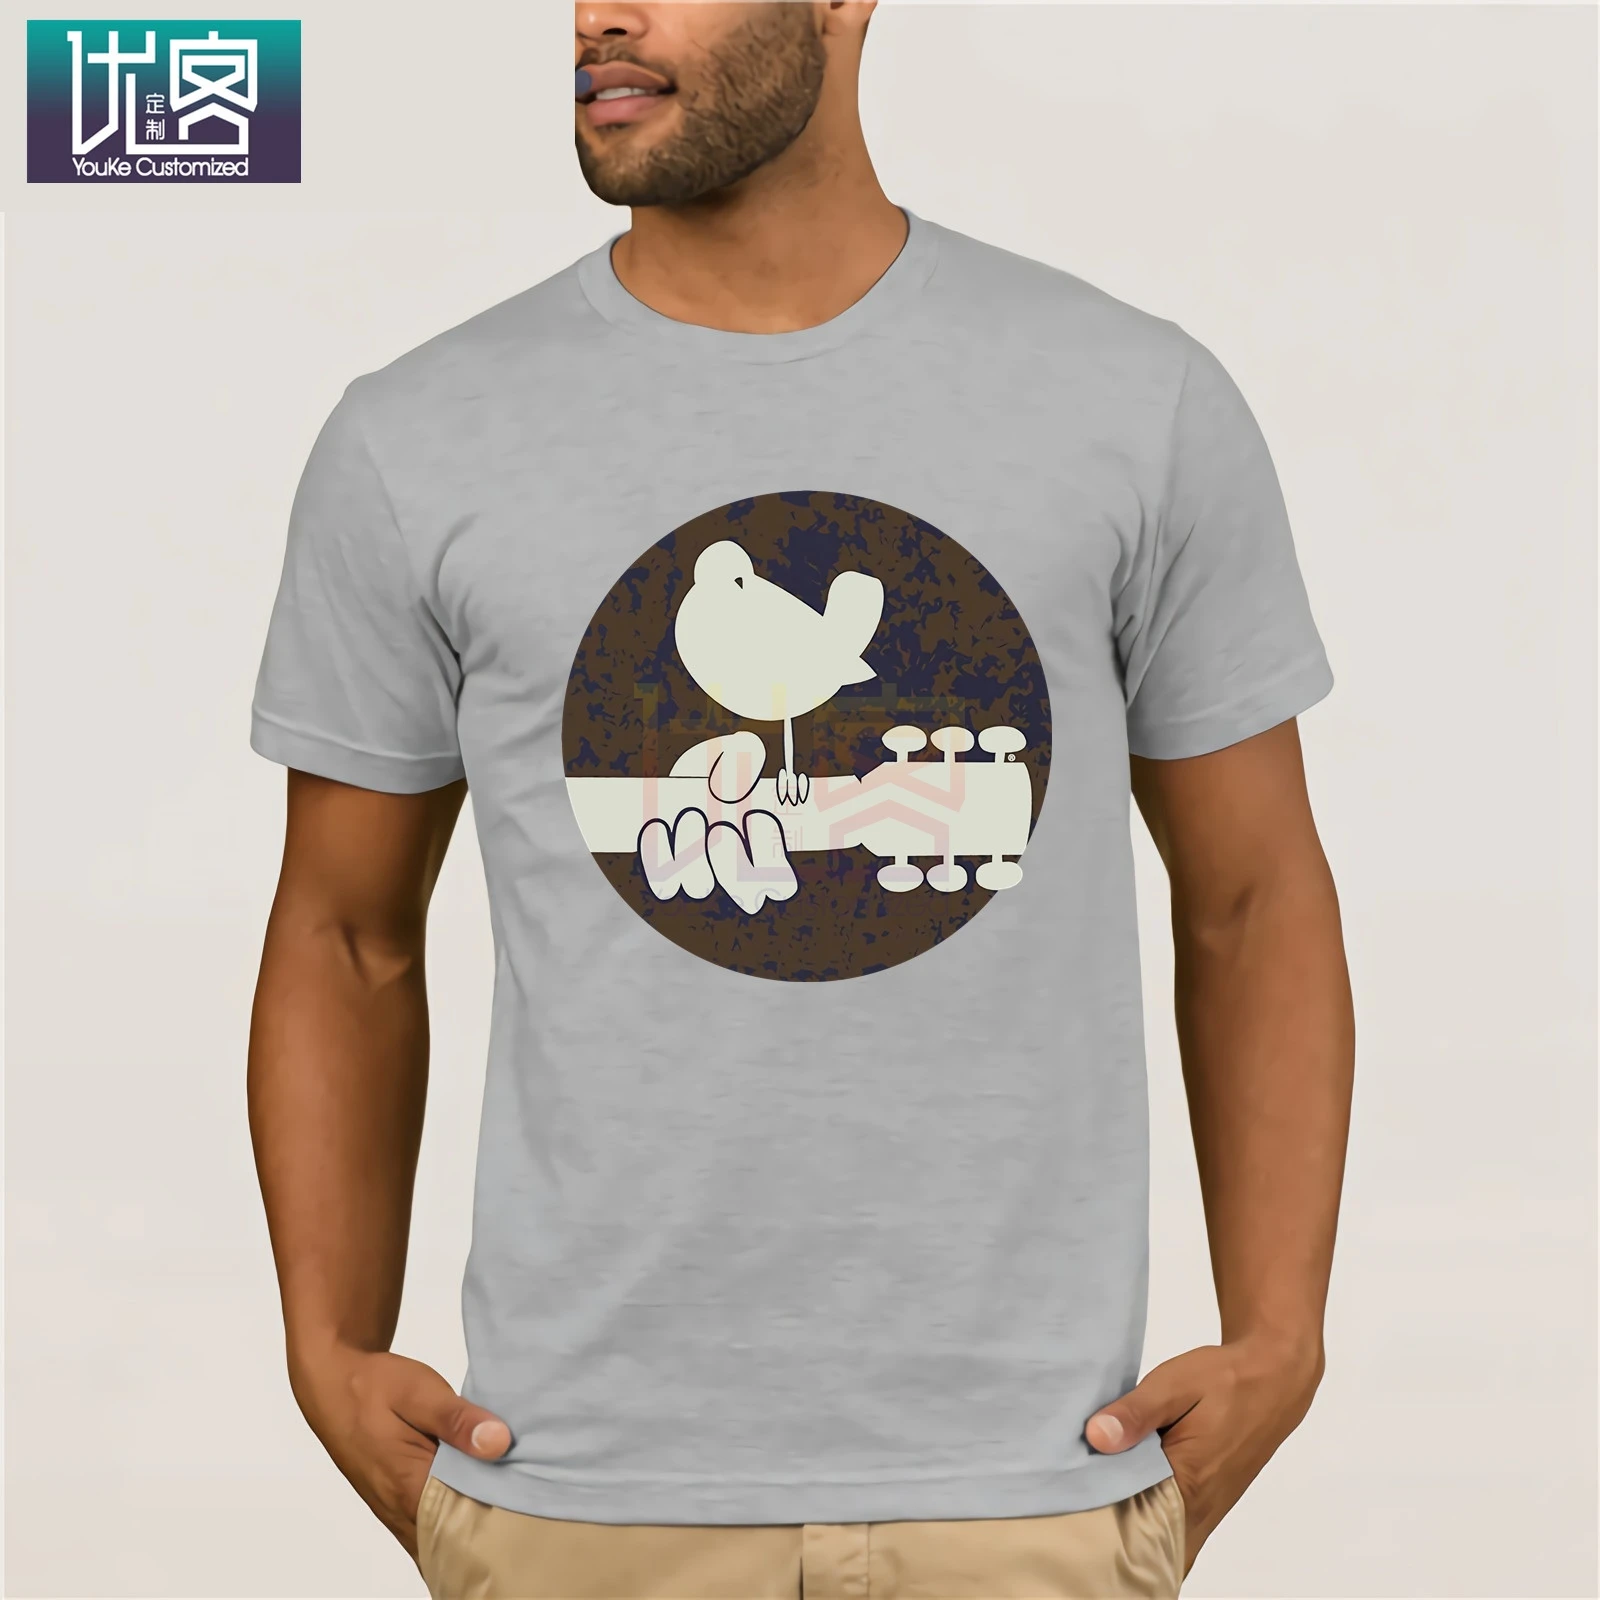 Woodstock выгорающая футболка с юмором 100% хлопковые топы топ графическим рисунком и